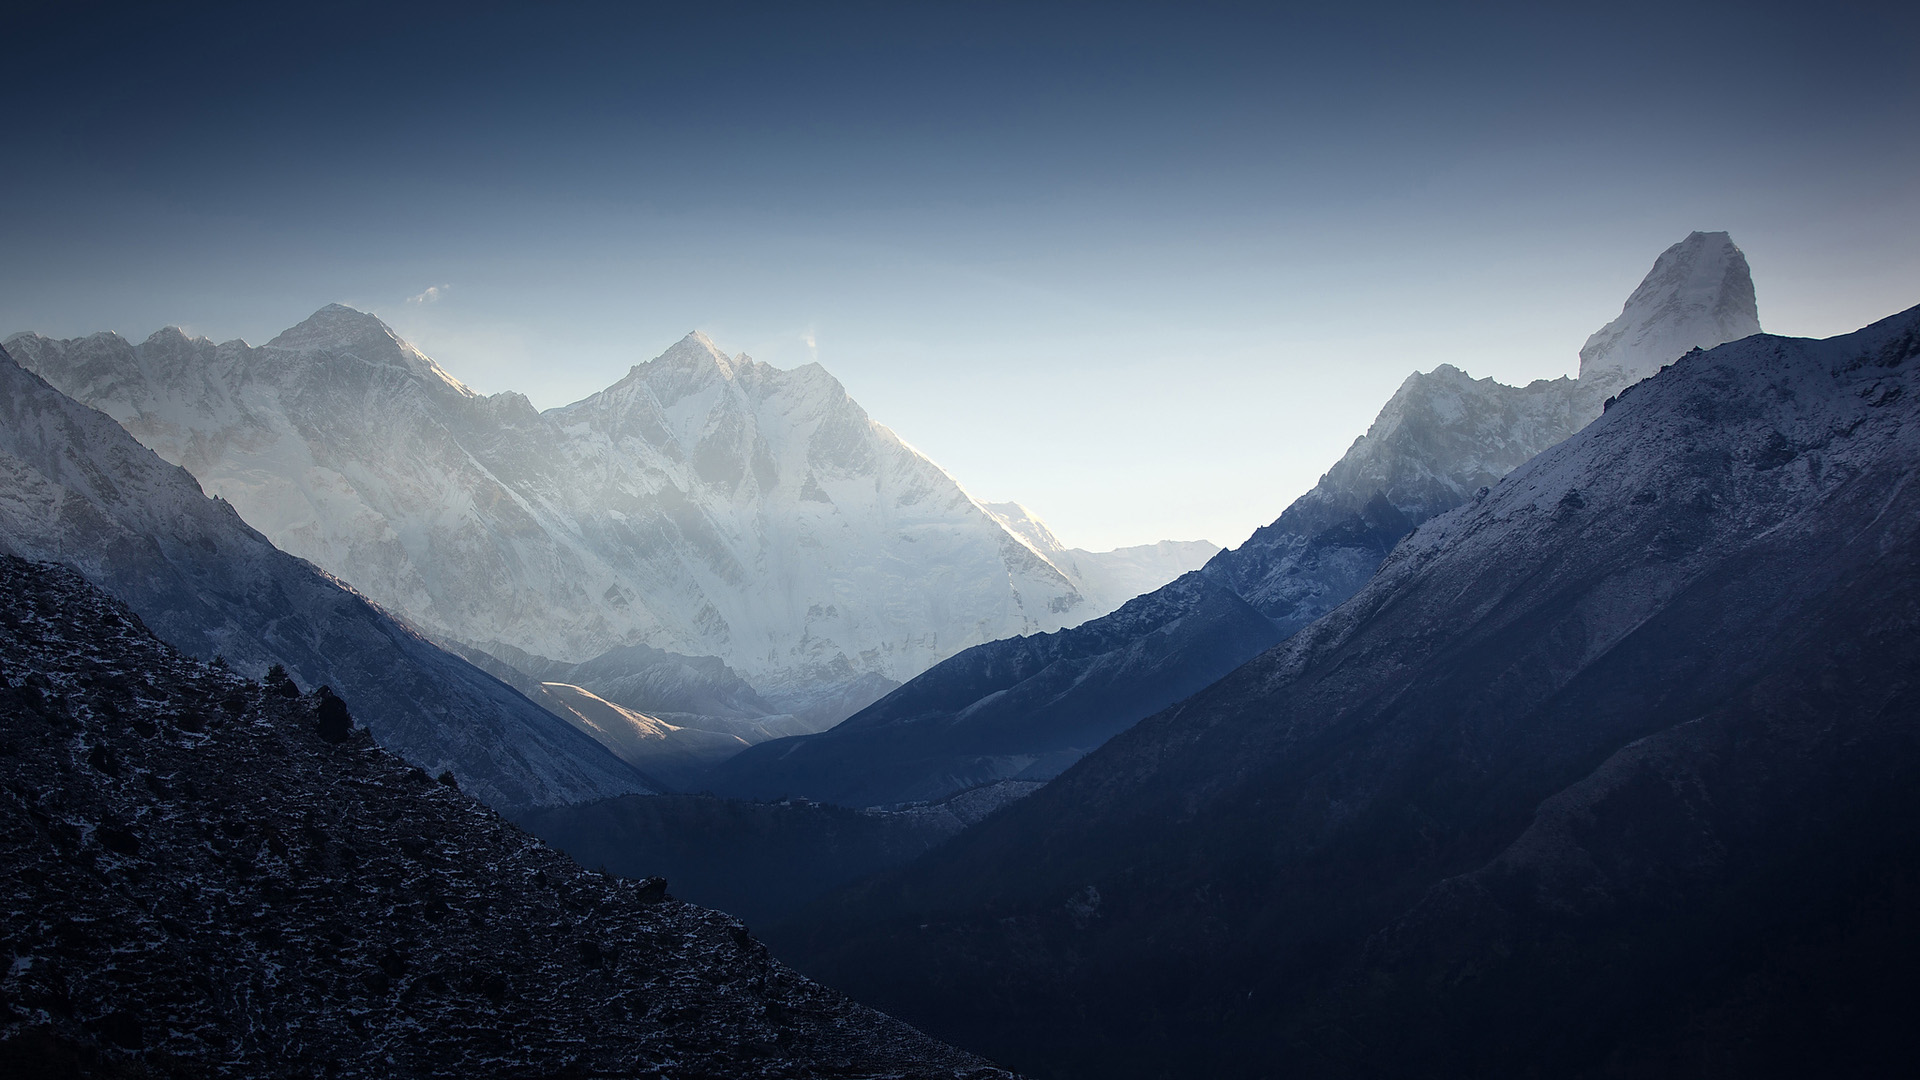 努子峰,洛子峰,高峰,喜马拉雅山脉风景宽屏桌面壁纸